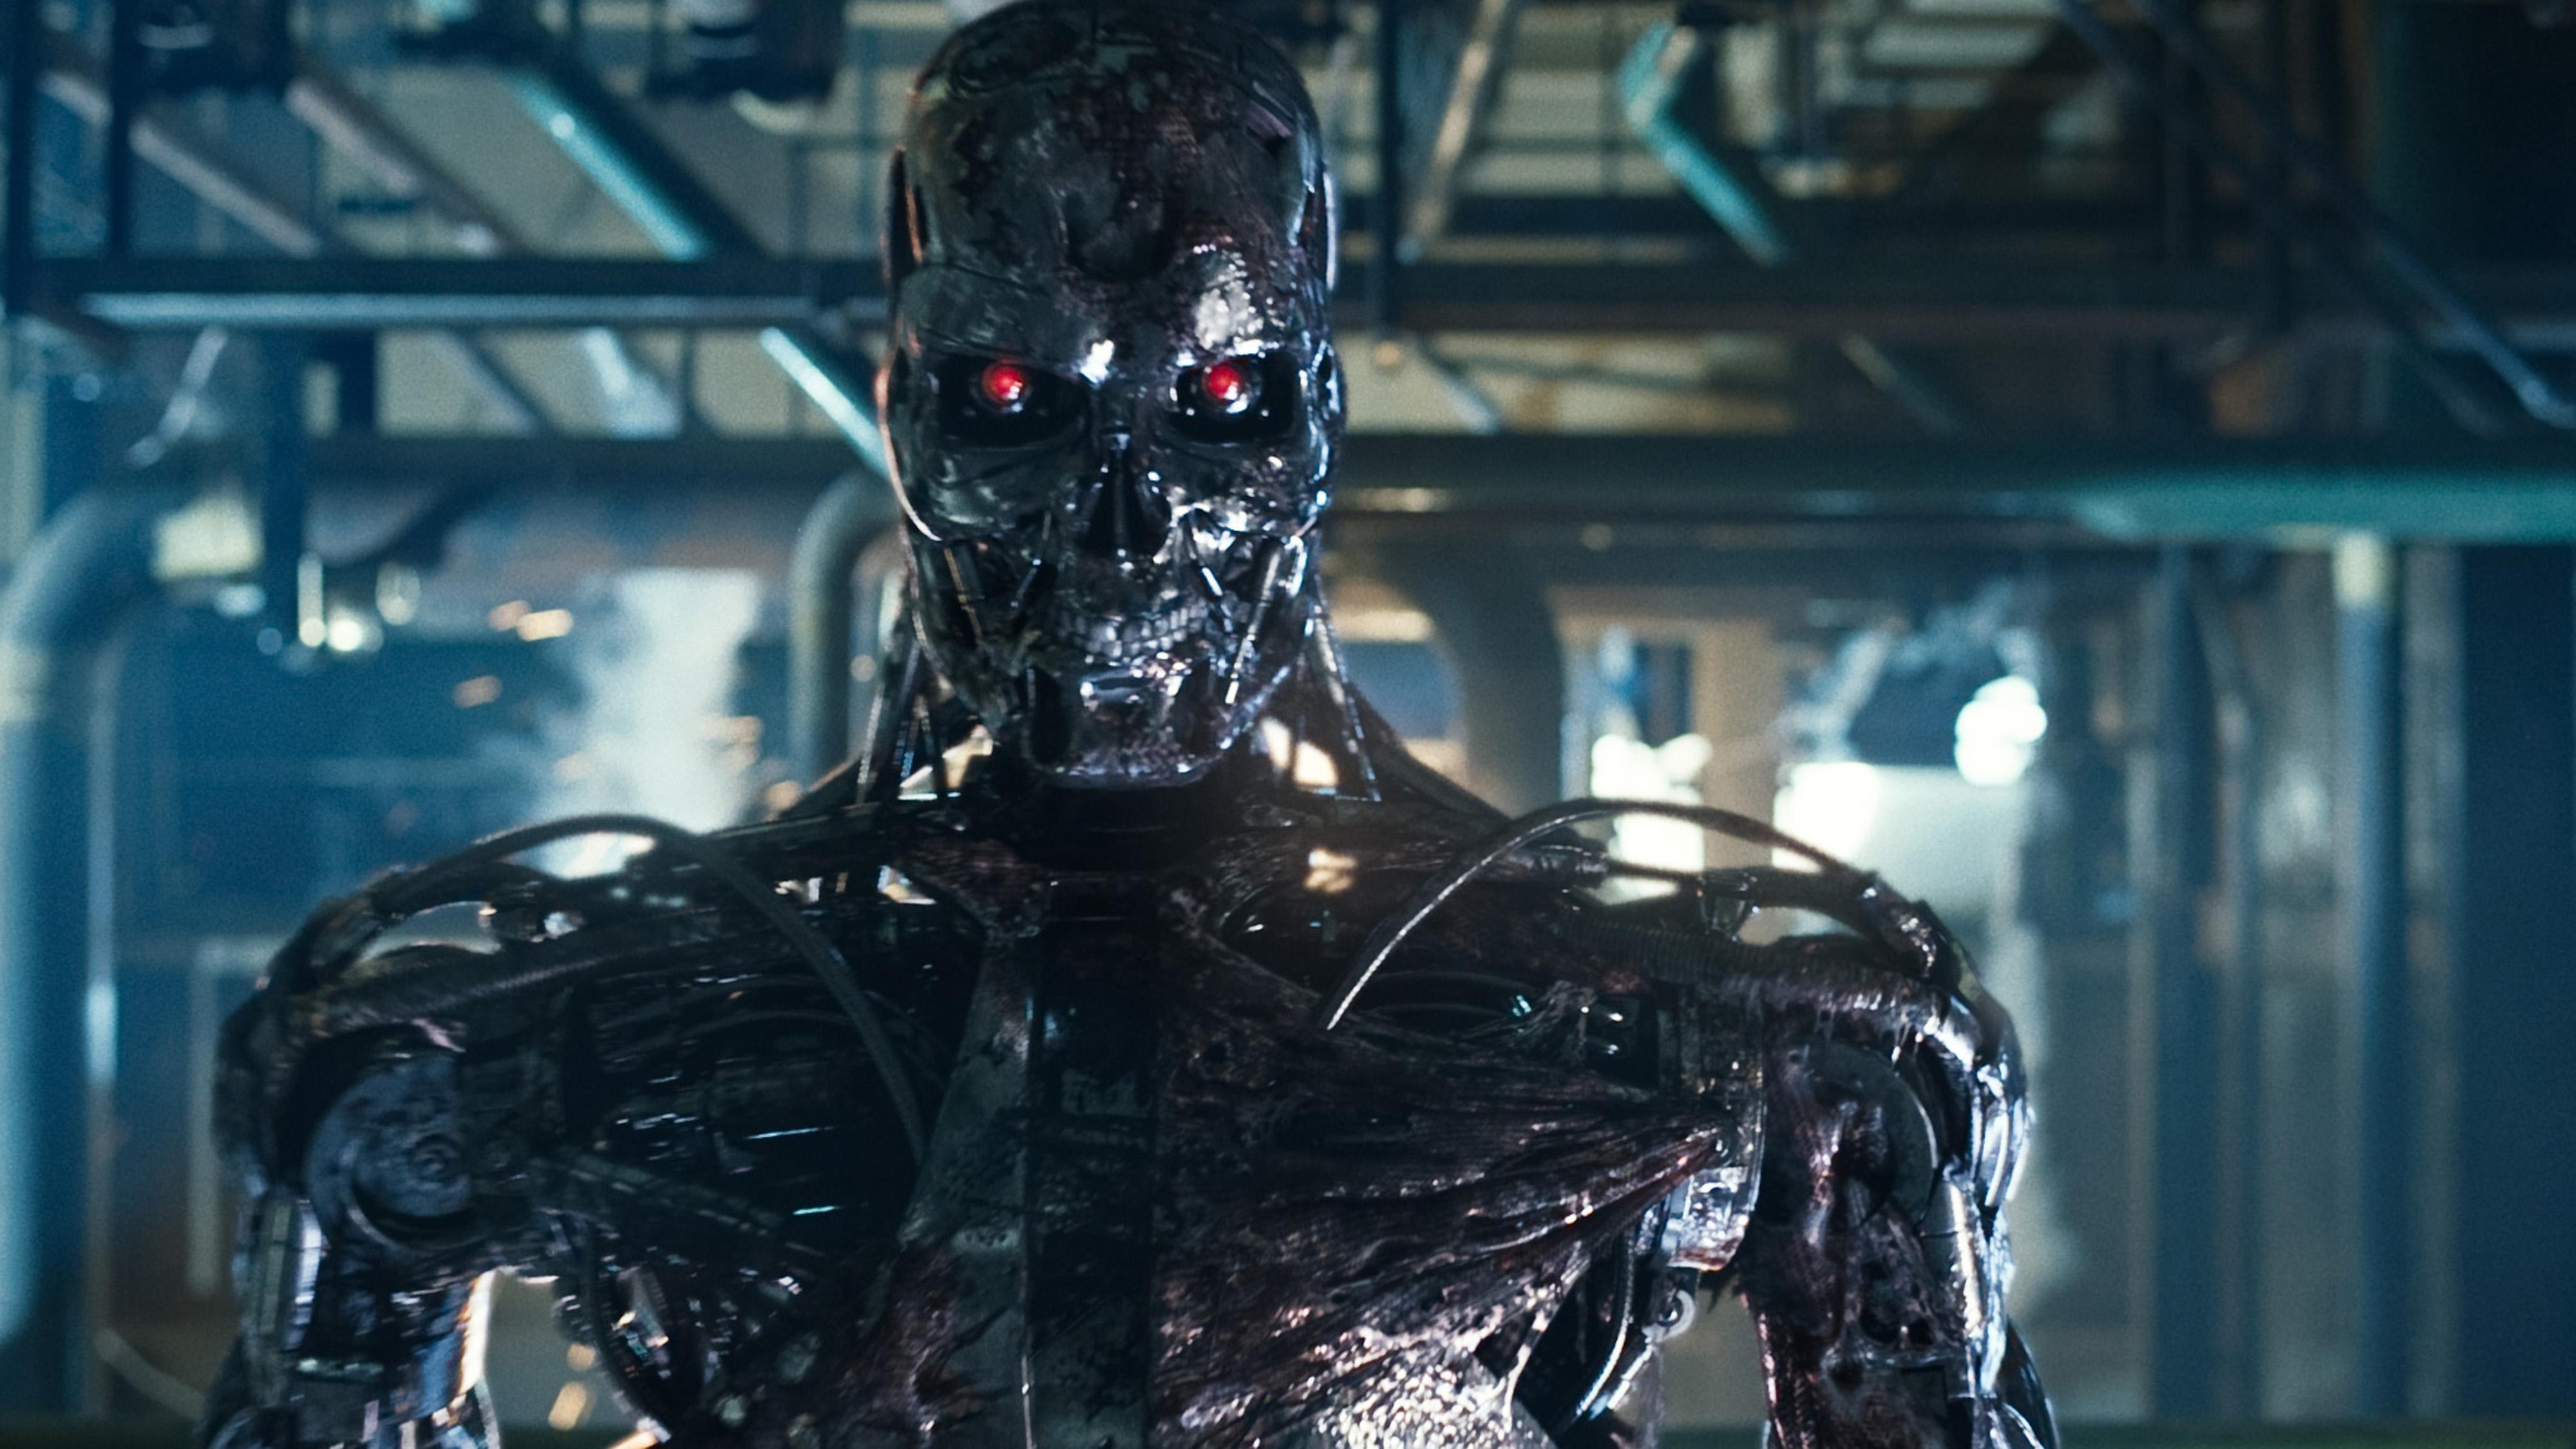  Robot pembunuh, seperti yang terlihat dalam film Terminator, adalah topik hangat di kalangan penggemar teknologi